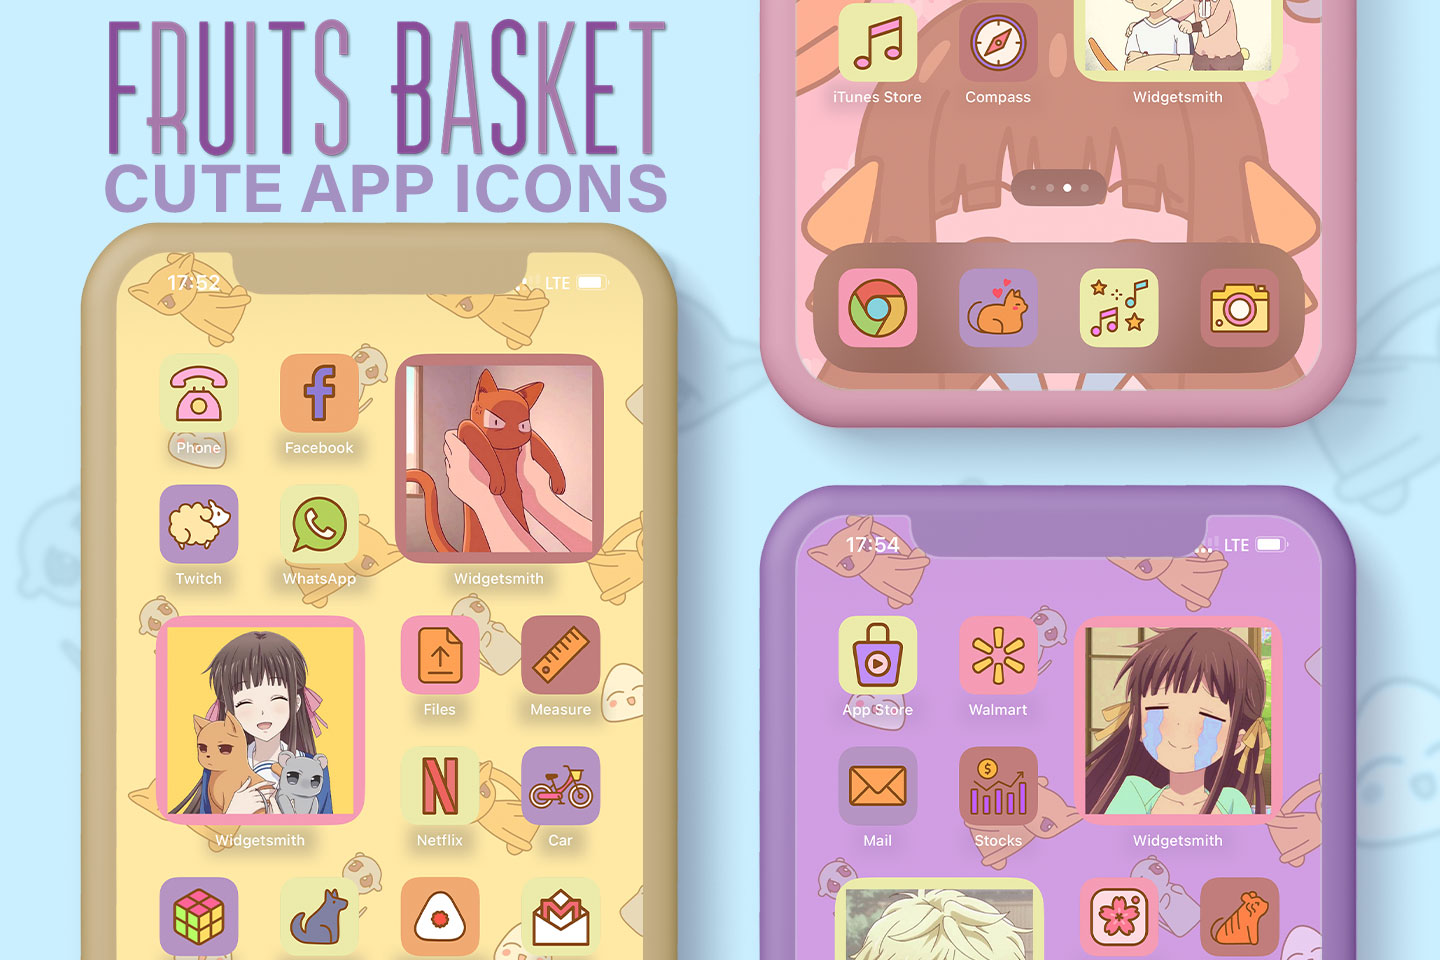 Paquete de iconos de la aplicación estética de la cesta de frutas lindas